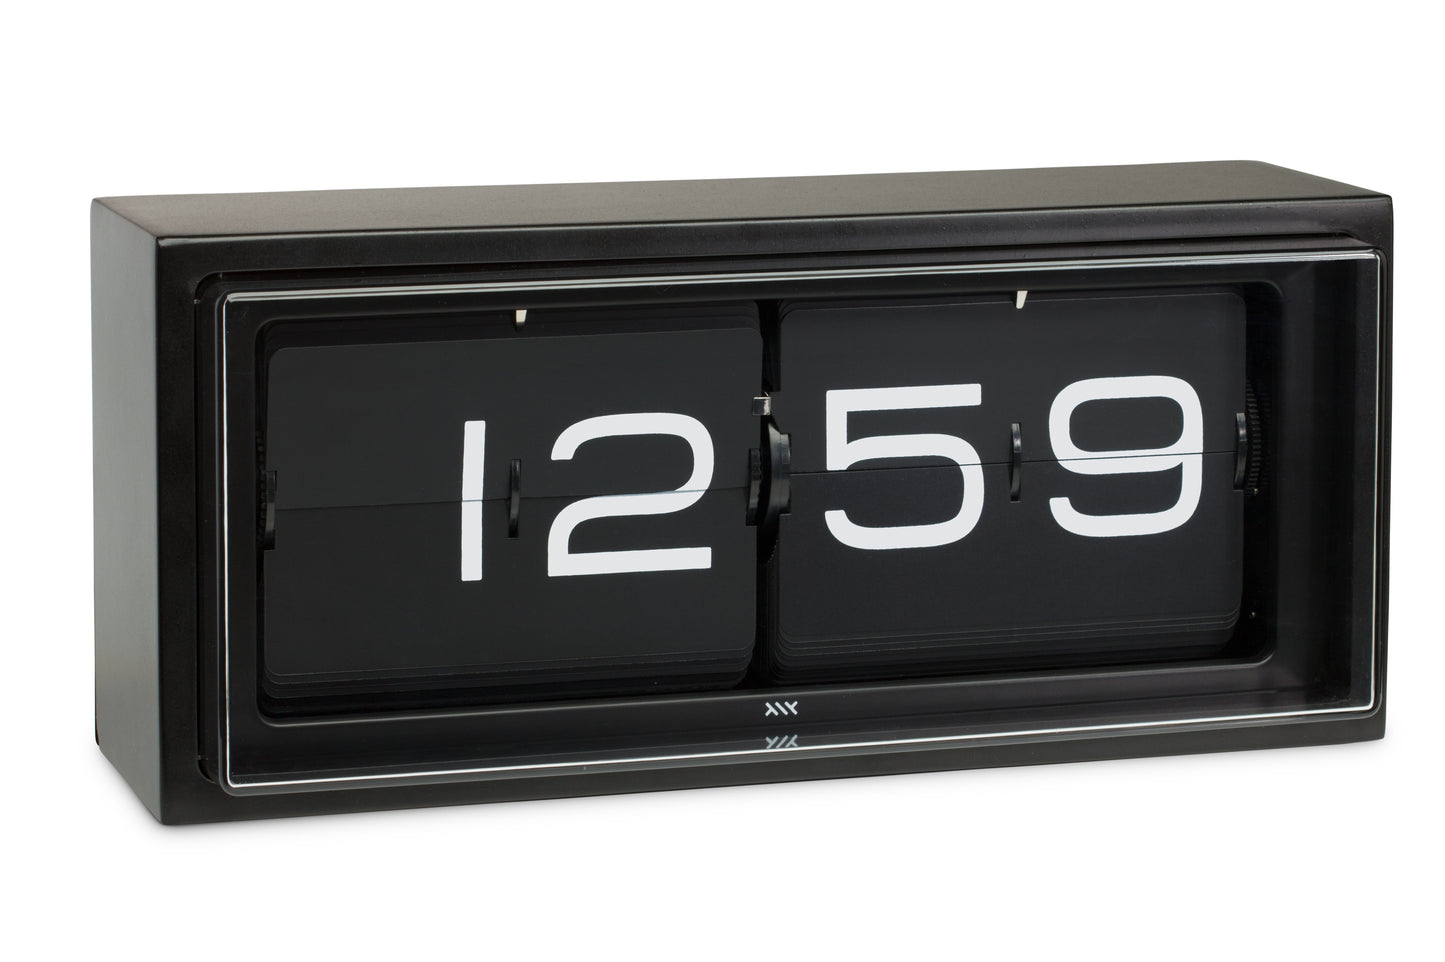 LEFF Amsterdam Retro Flip Display Brick Clock Black IP Stainless Steel Black Display with White Numbers